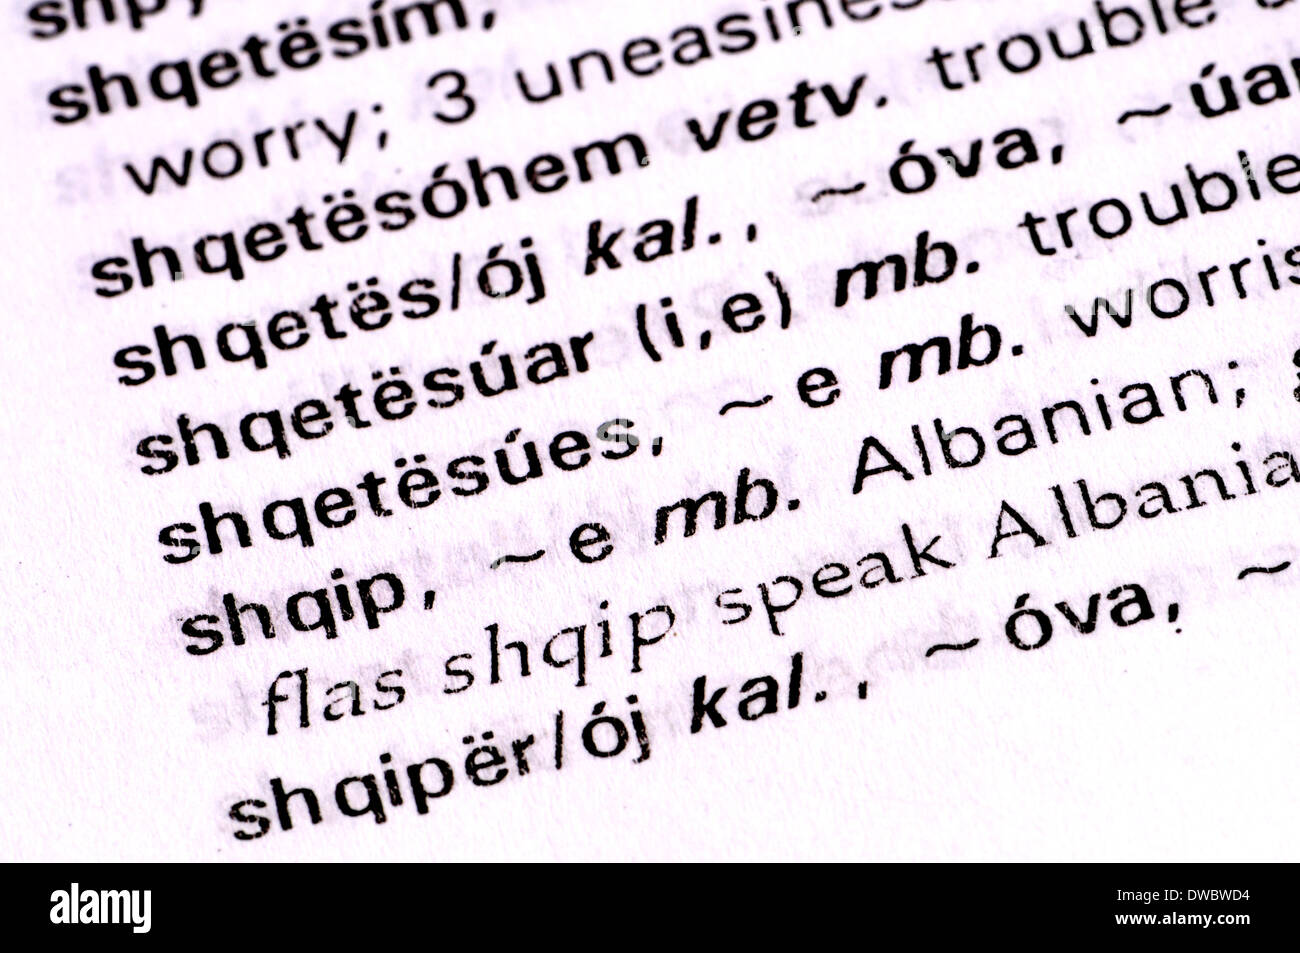 Albanisch-Englisch Wörterbuch - Eintrag für "Albanisch" Stockfoto